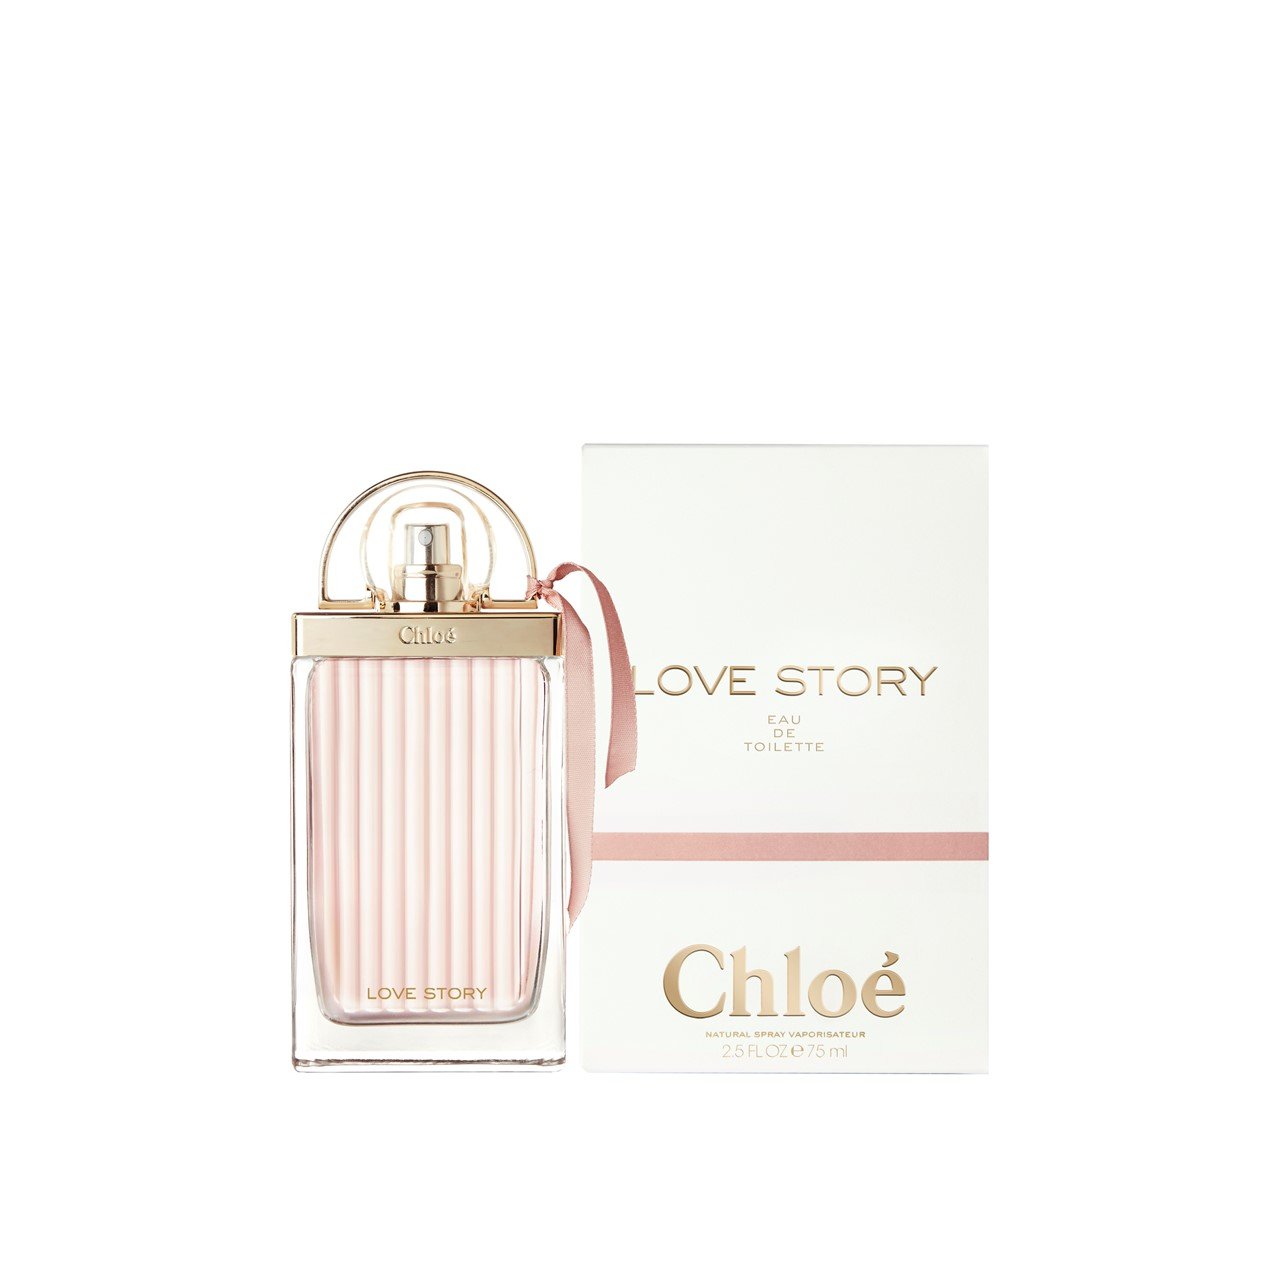 Chloé Love Story Eau de Toilette 75ml